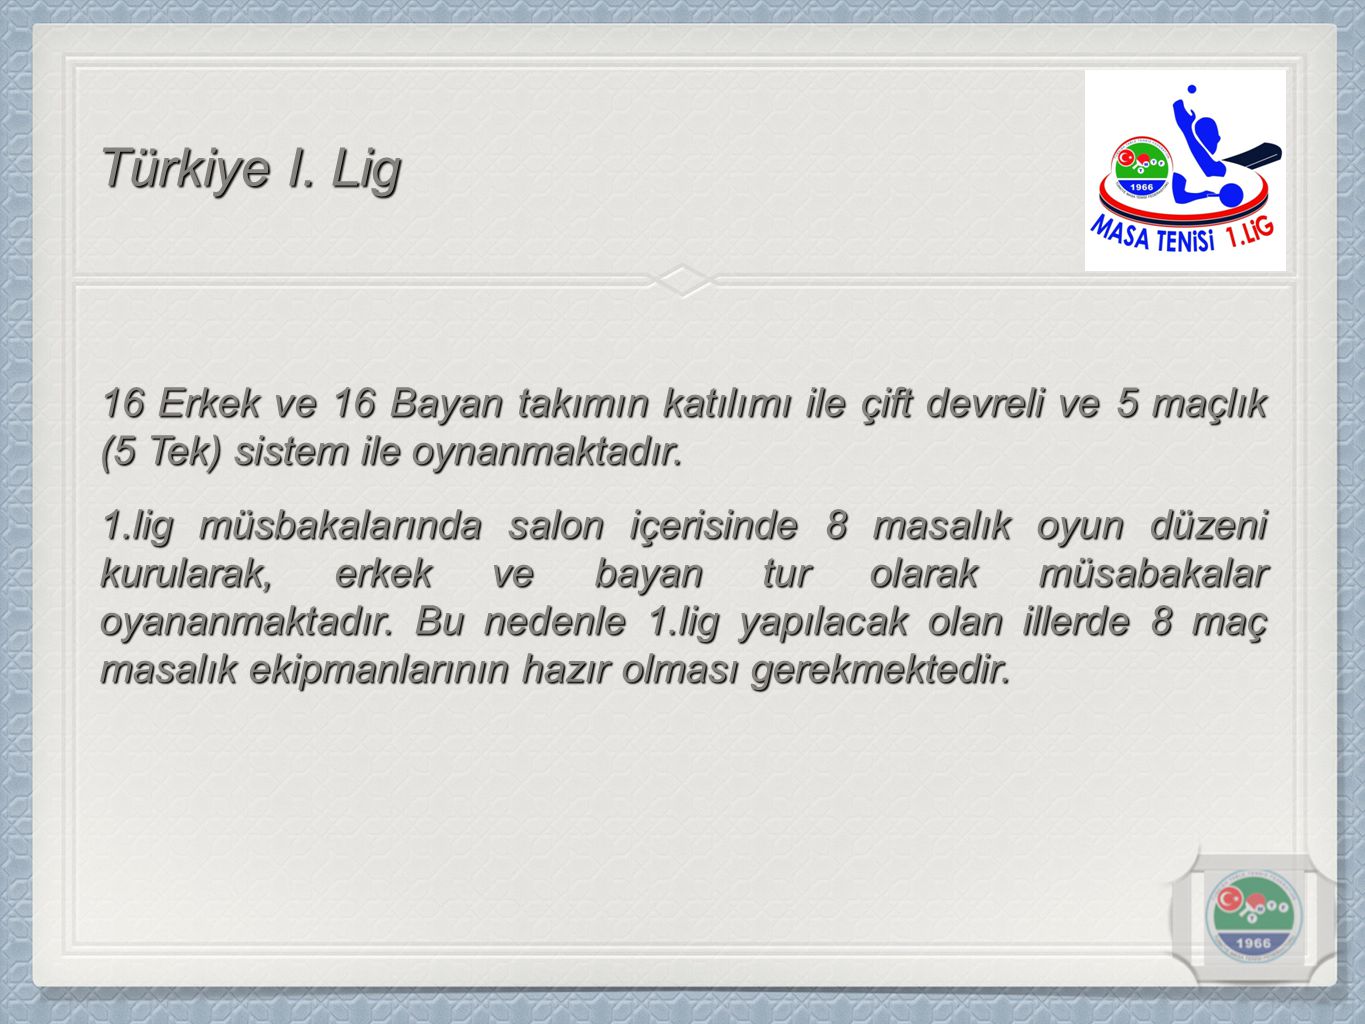 Türkiye I. Lig 16 Erkek ve 16 Bayan takımın katılımı ile çift devreli ve 5 maçlık (5 Tek) sistem ile oynanmaktadır.